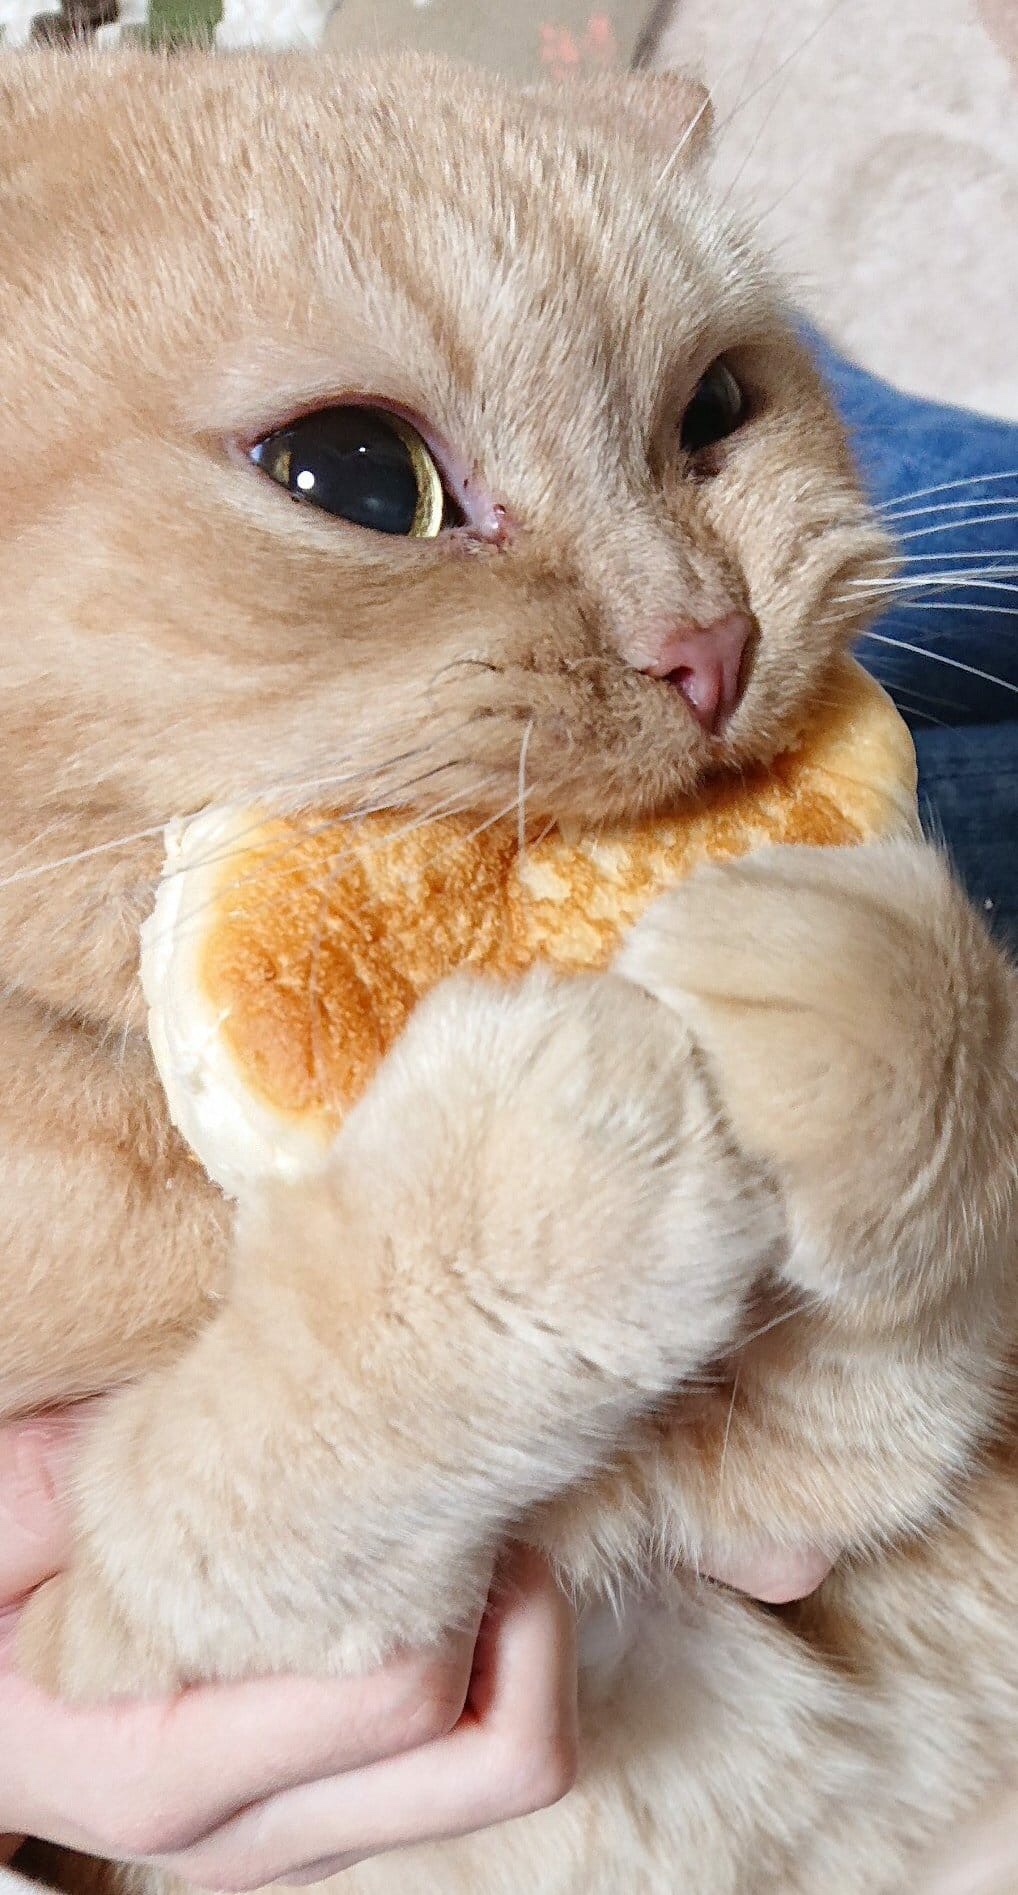 memes - cat eating pancake